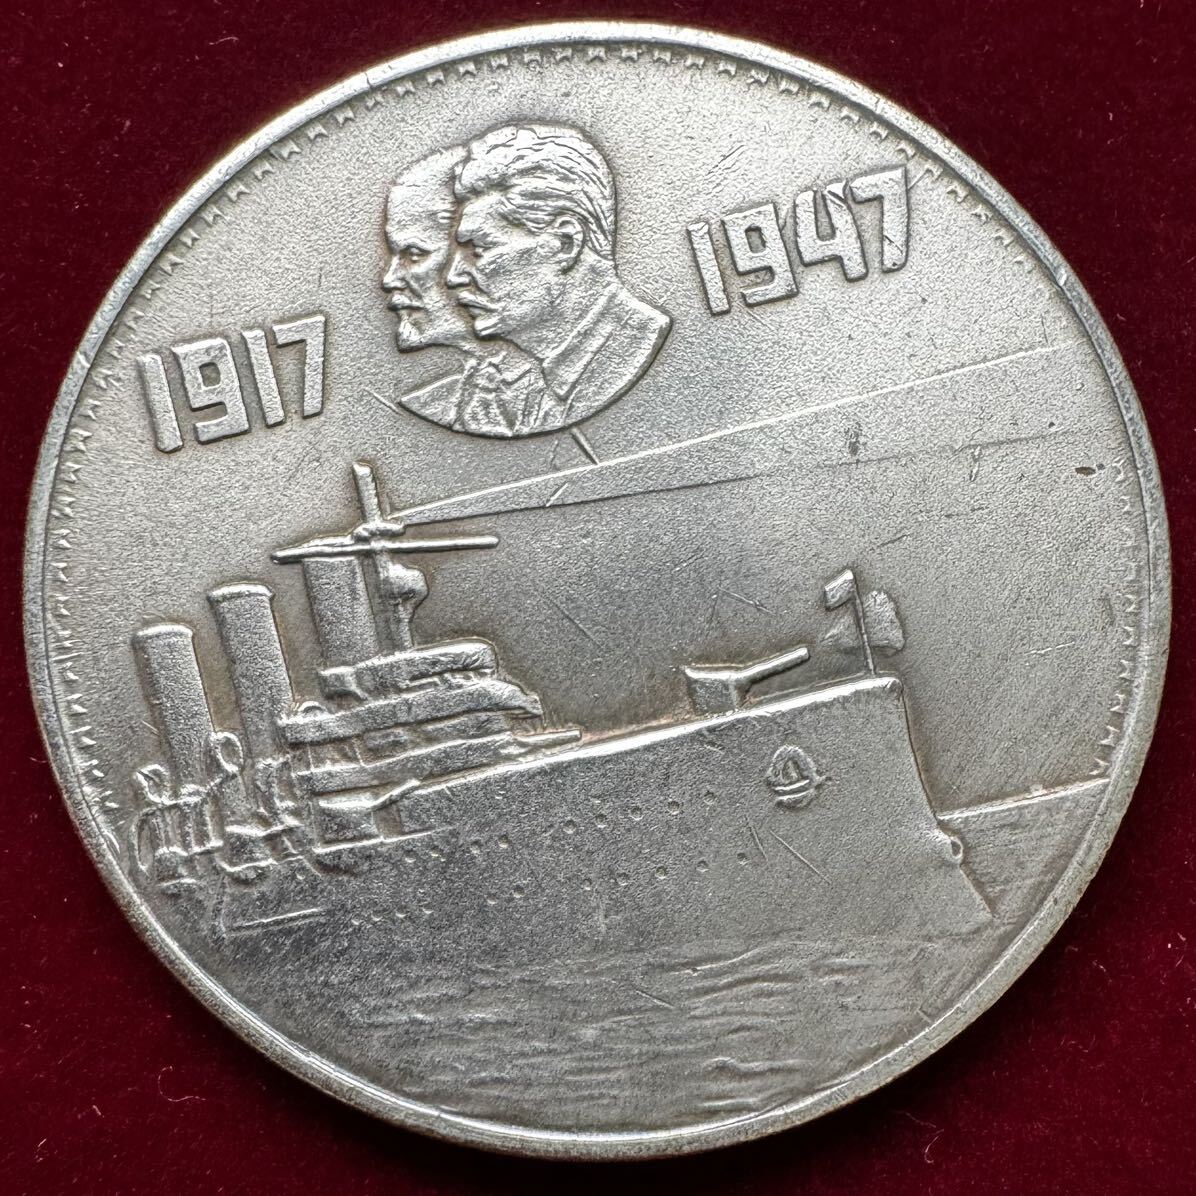 ロシア 硬貨 古銭 ソビエト連邦 1947年 革命30周年記念 レーニン スターリン 潜水艦 記念幣 コイン 銀貨 外国古銭 海外硬貨 _画像1